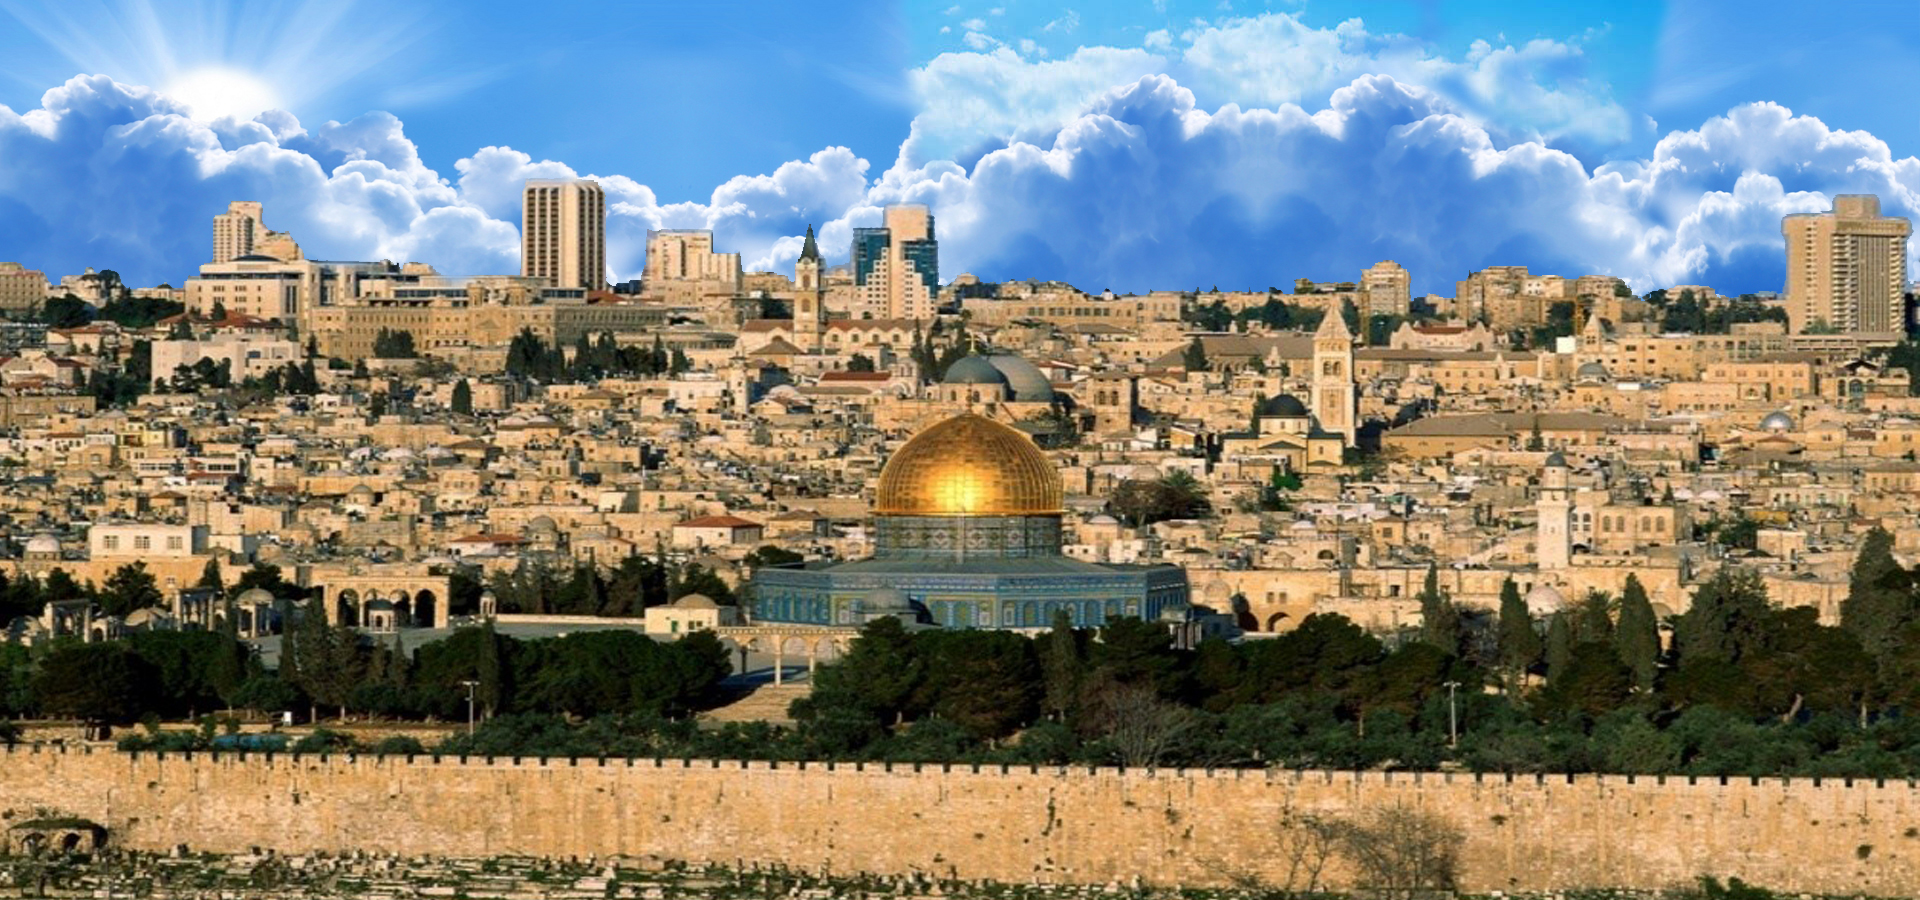 EL Shaddai – Israel – Shalom Jerusalem Tours